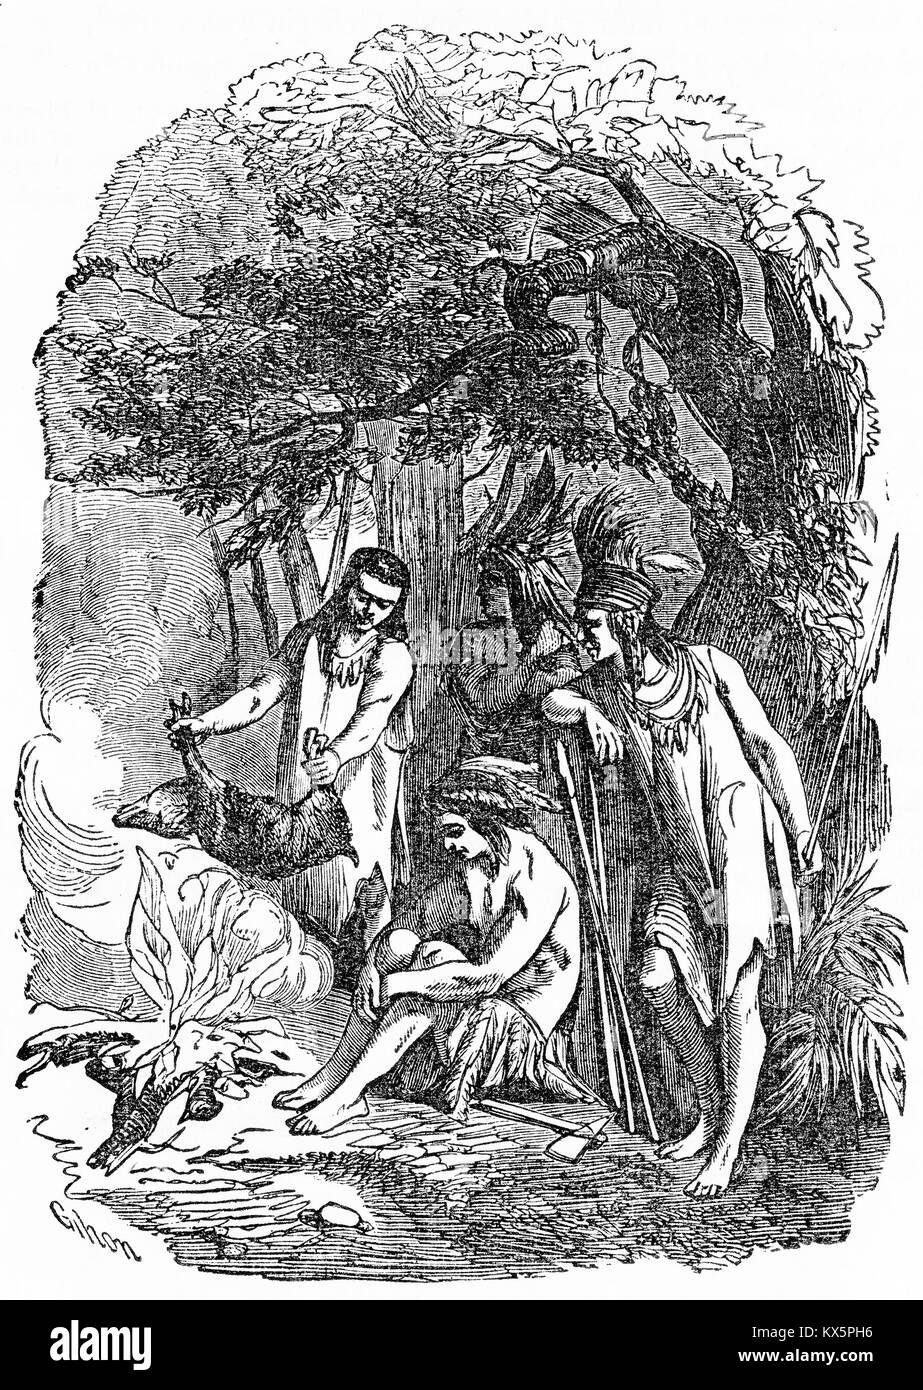 Grabado de nativos americanos, cocinar una comida, supuestamente en los días antes de la llegada de los europeos. A partir de una nueva historia de Estados Unidos, John Lord, 1859. Foto de stock